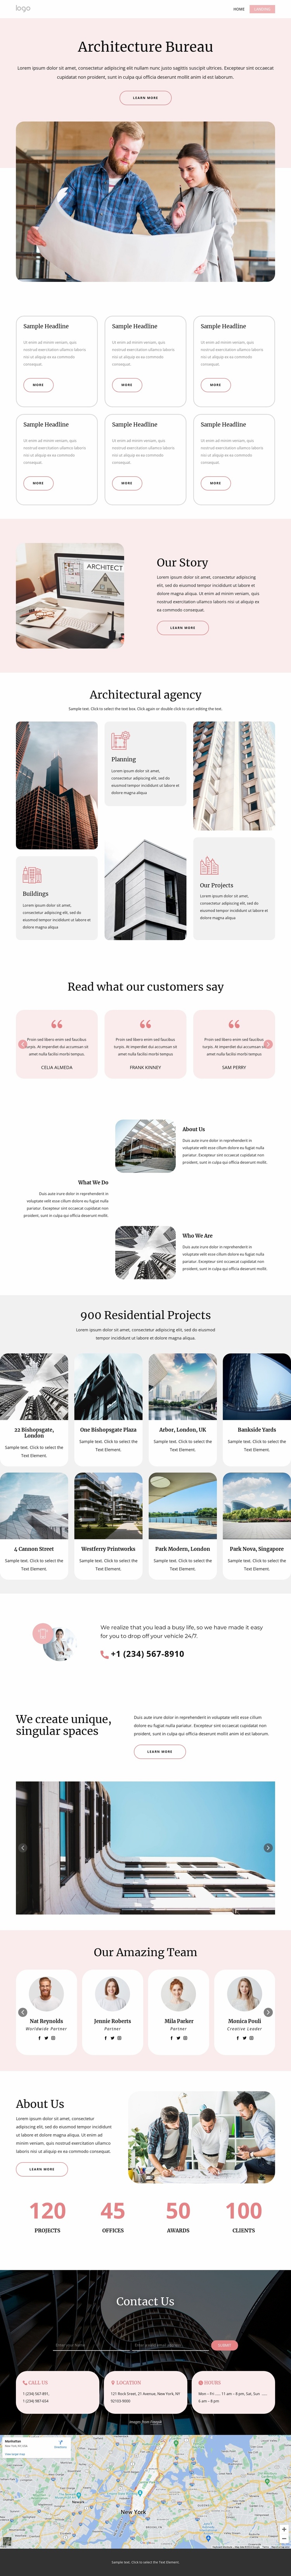 Architecture bureau Website Template